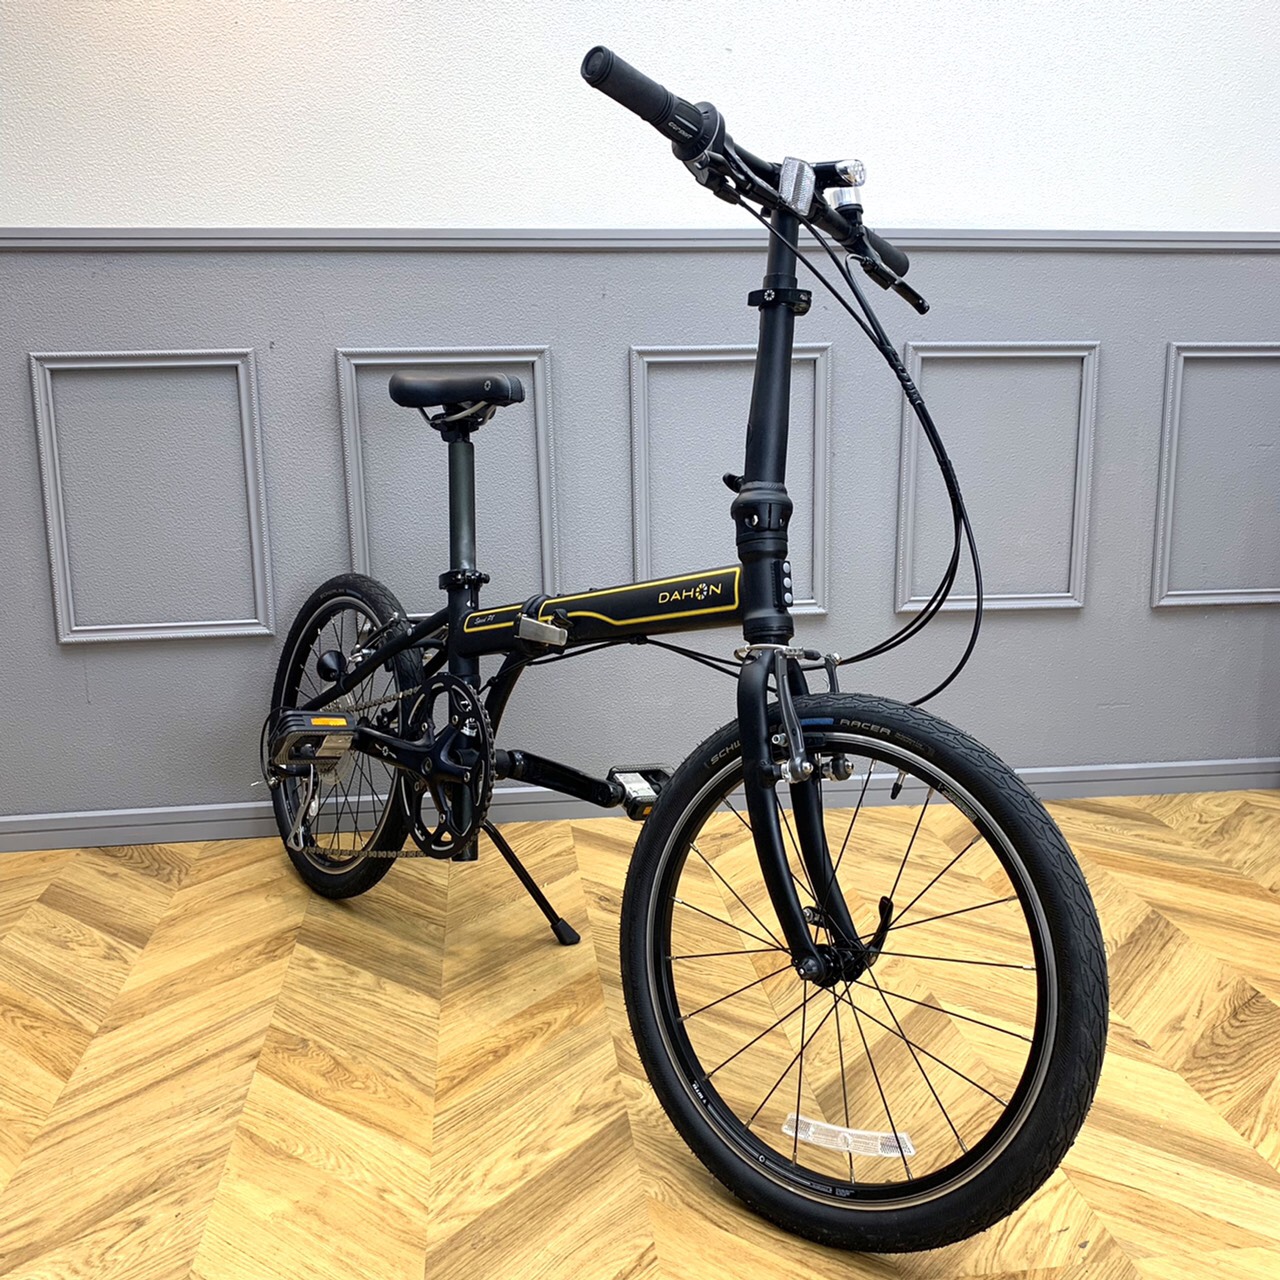 DAHON 折りたたみ自転車 2013年モデル Speed P8 30周年記念モデル